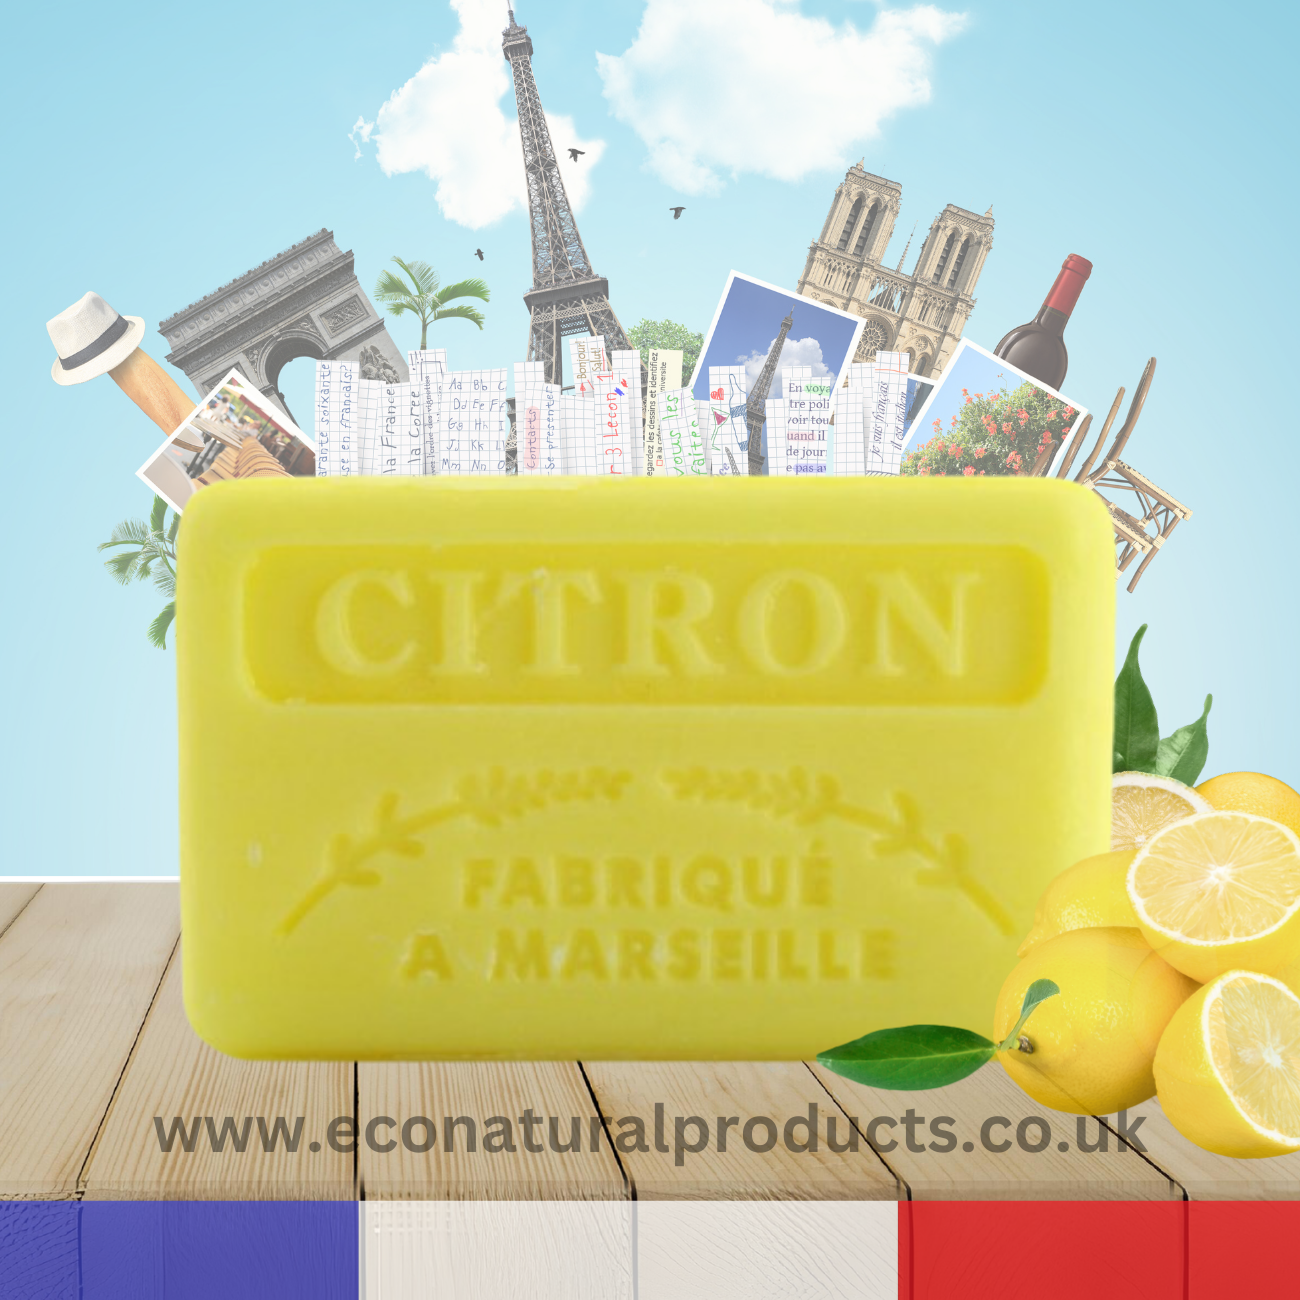 French Marseille Soap Citron (Lemon) 125g